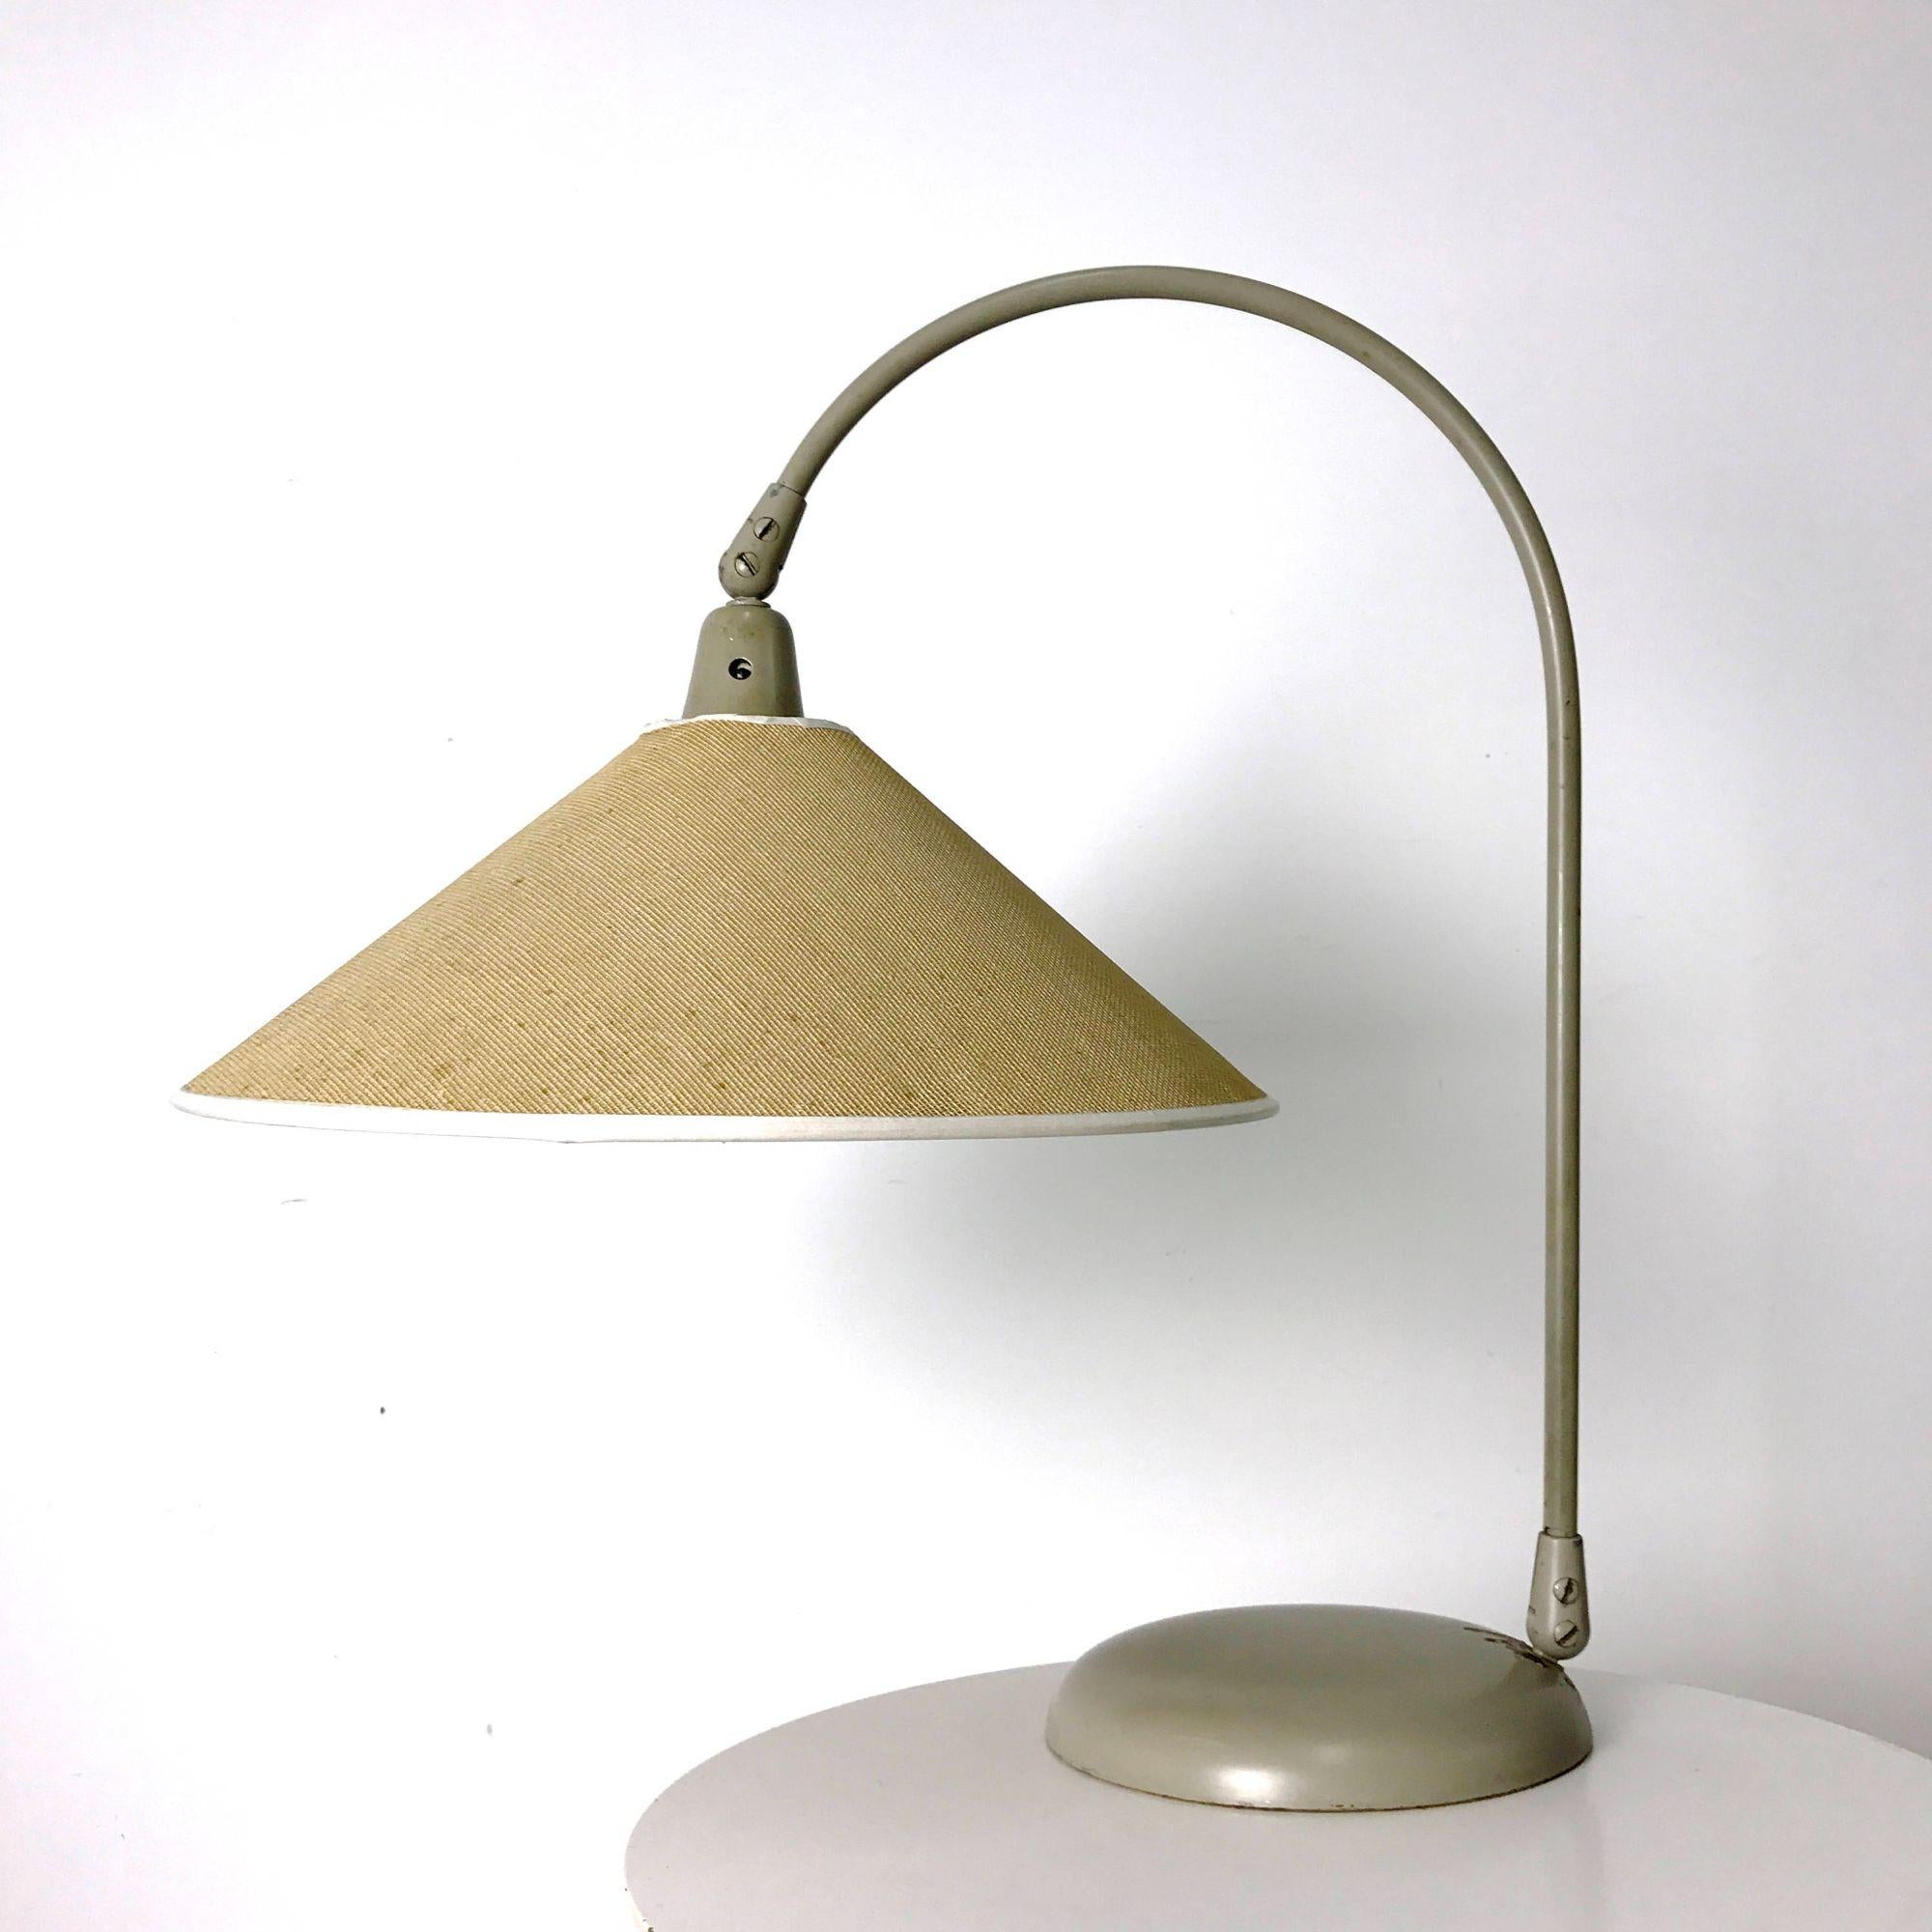 Rare lampe de table articulée de Kurt Versen 1950

Rare lampe de table, modèle 4420, conçue par Kurt Versen pour Kurt Versen Lamps, Inc. au début des années 1950. Abat-jour articulé et bras arqué sur base en métal émaillé. L'abat-jour est d'origine